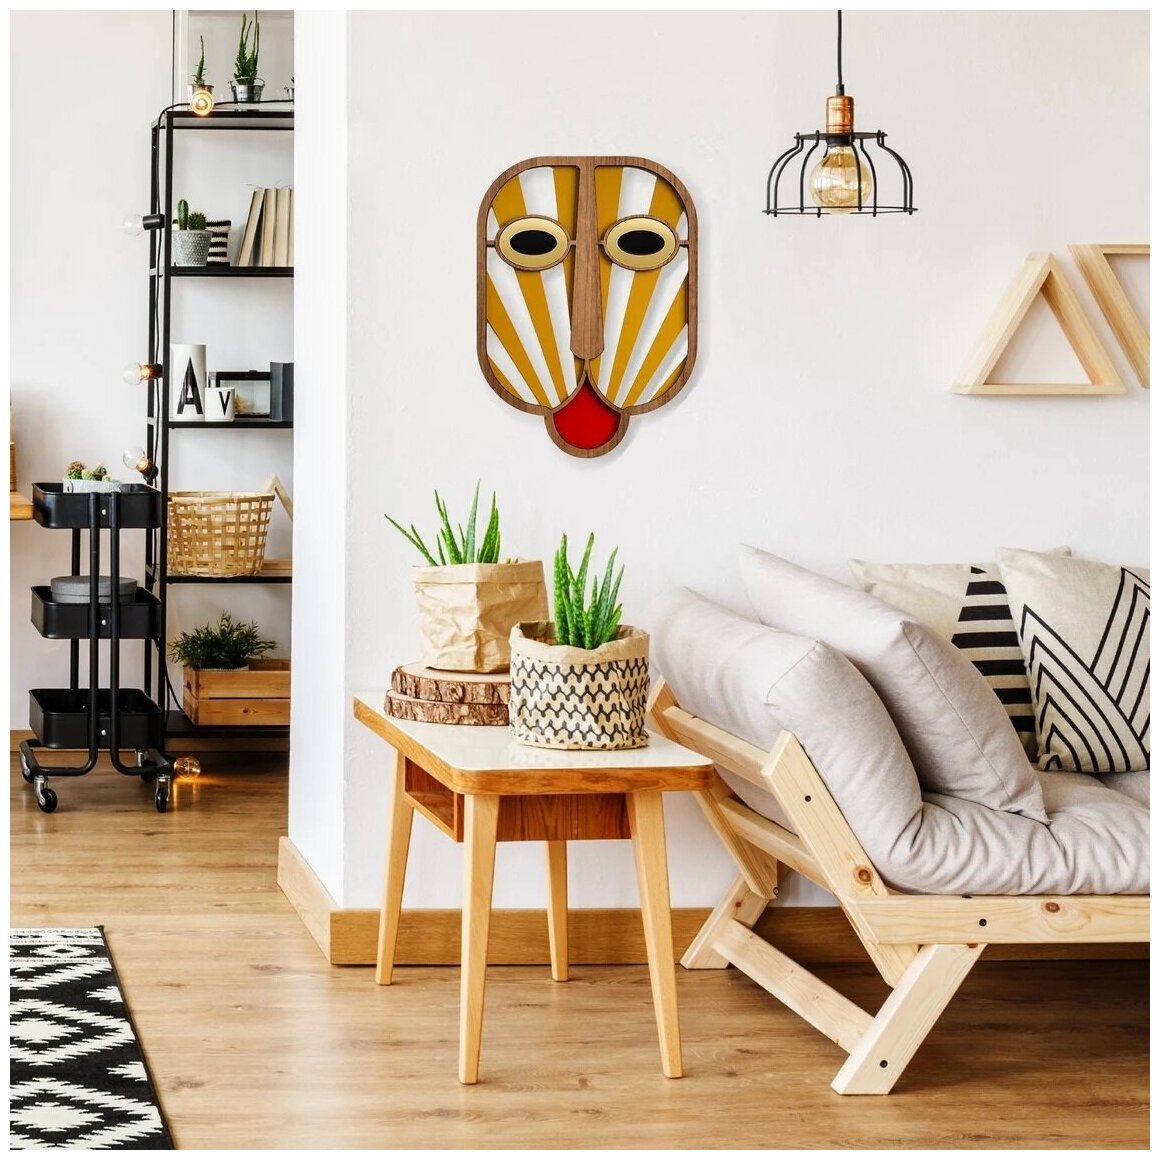 Настенная маска/панно деревянная на стену для дома и офиса / украшение настенное Африканское